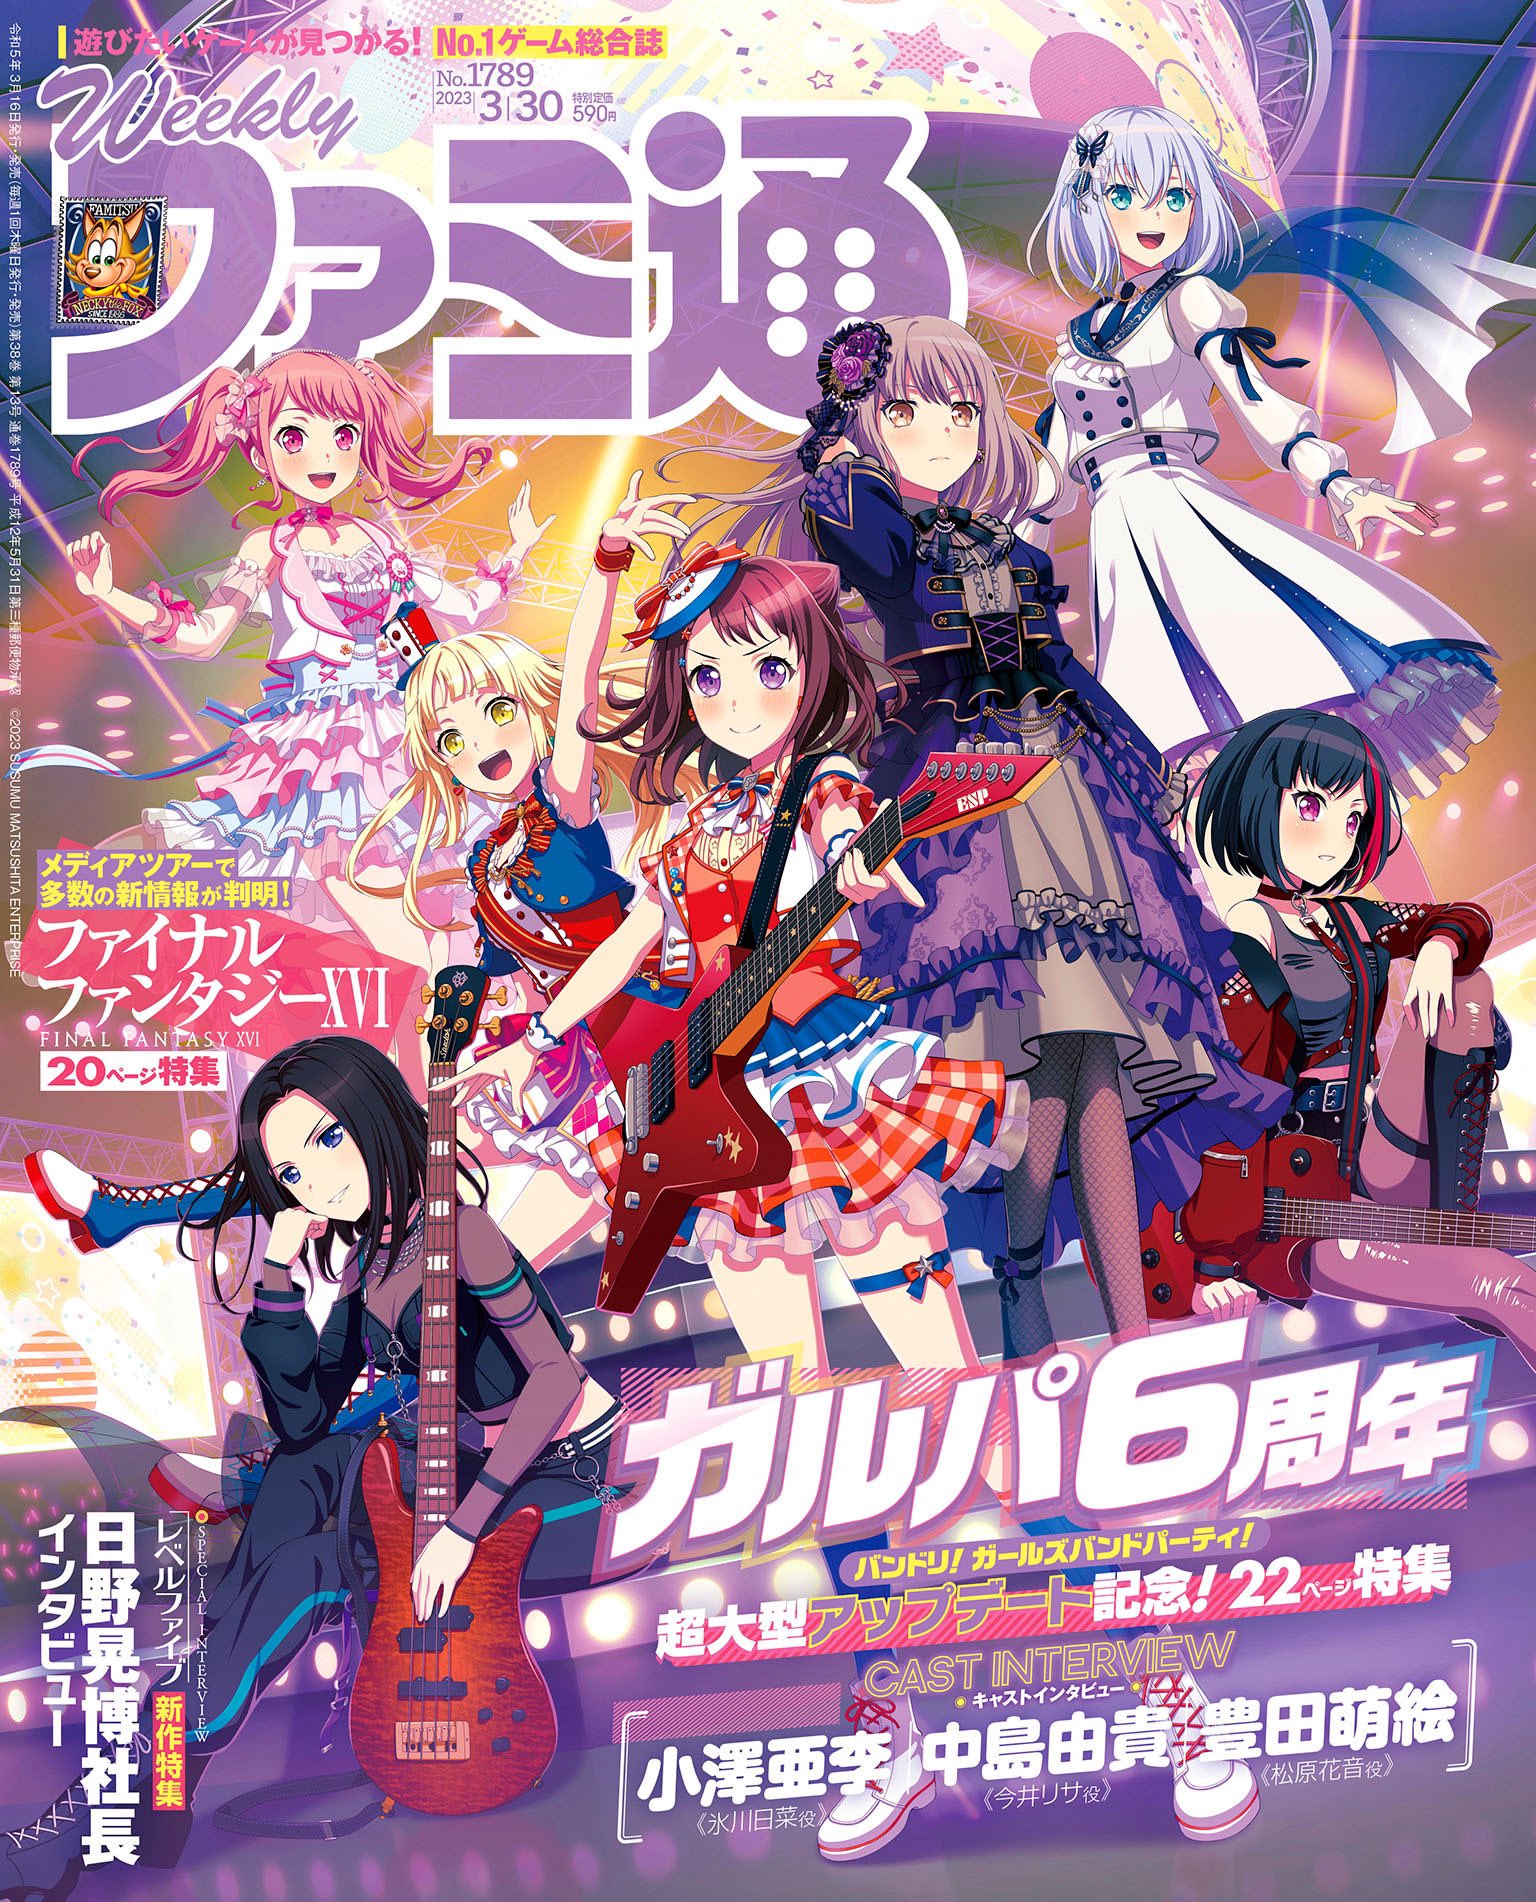 Famitsu cover